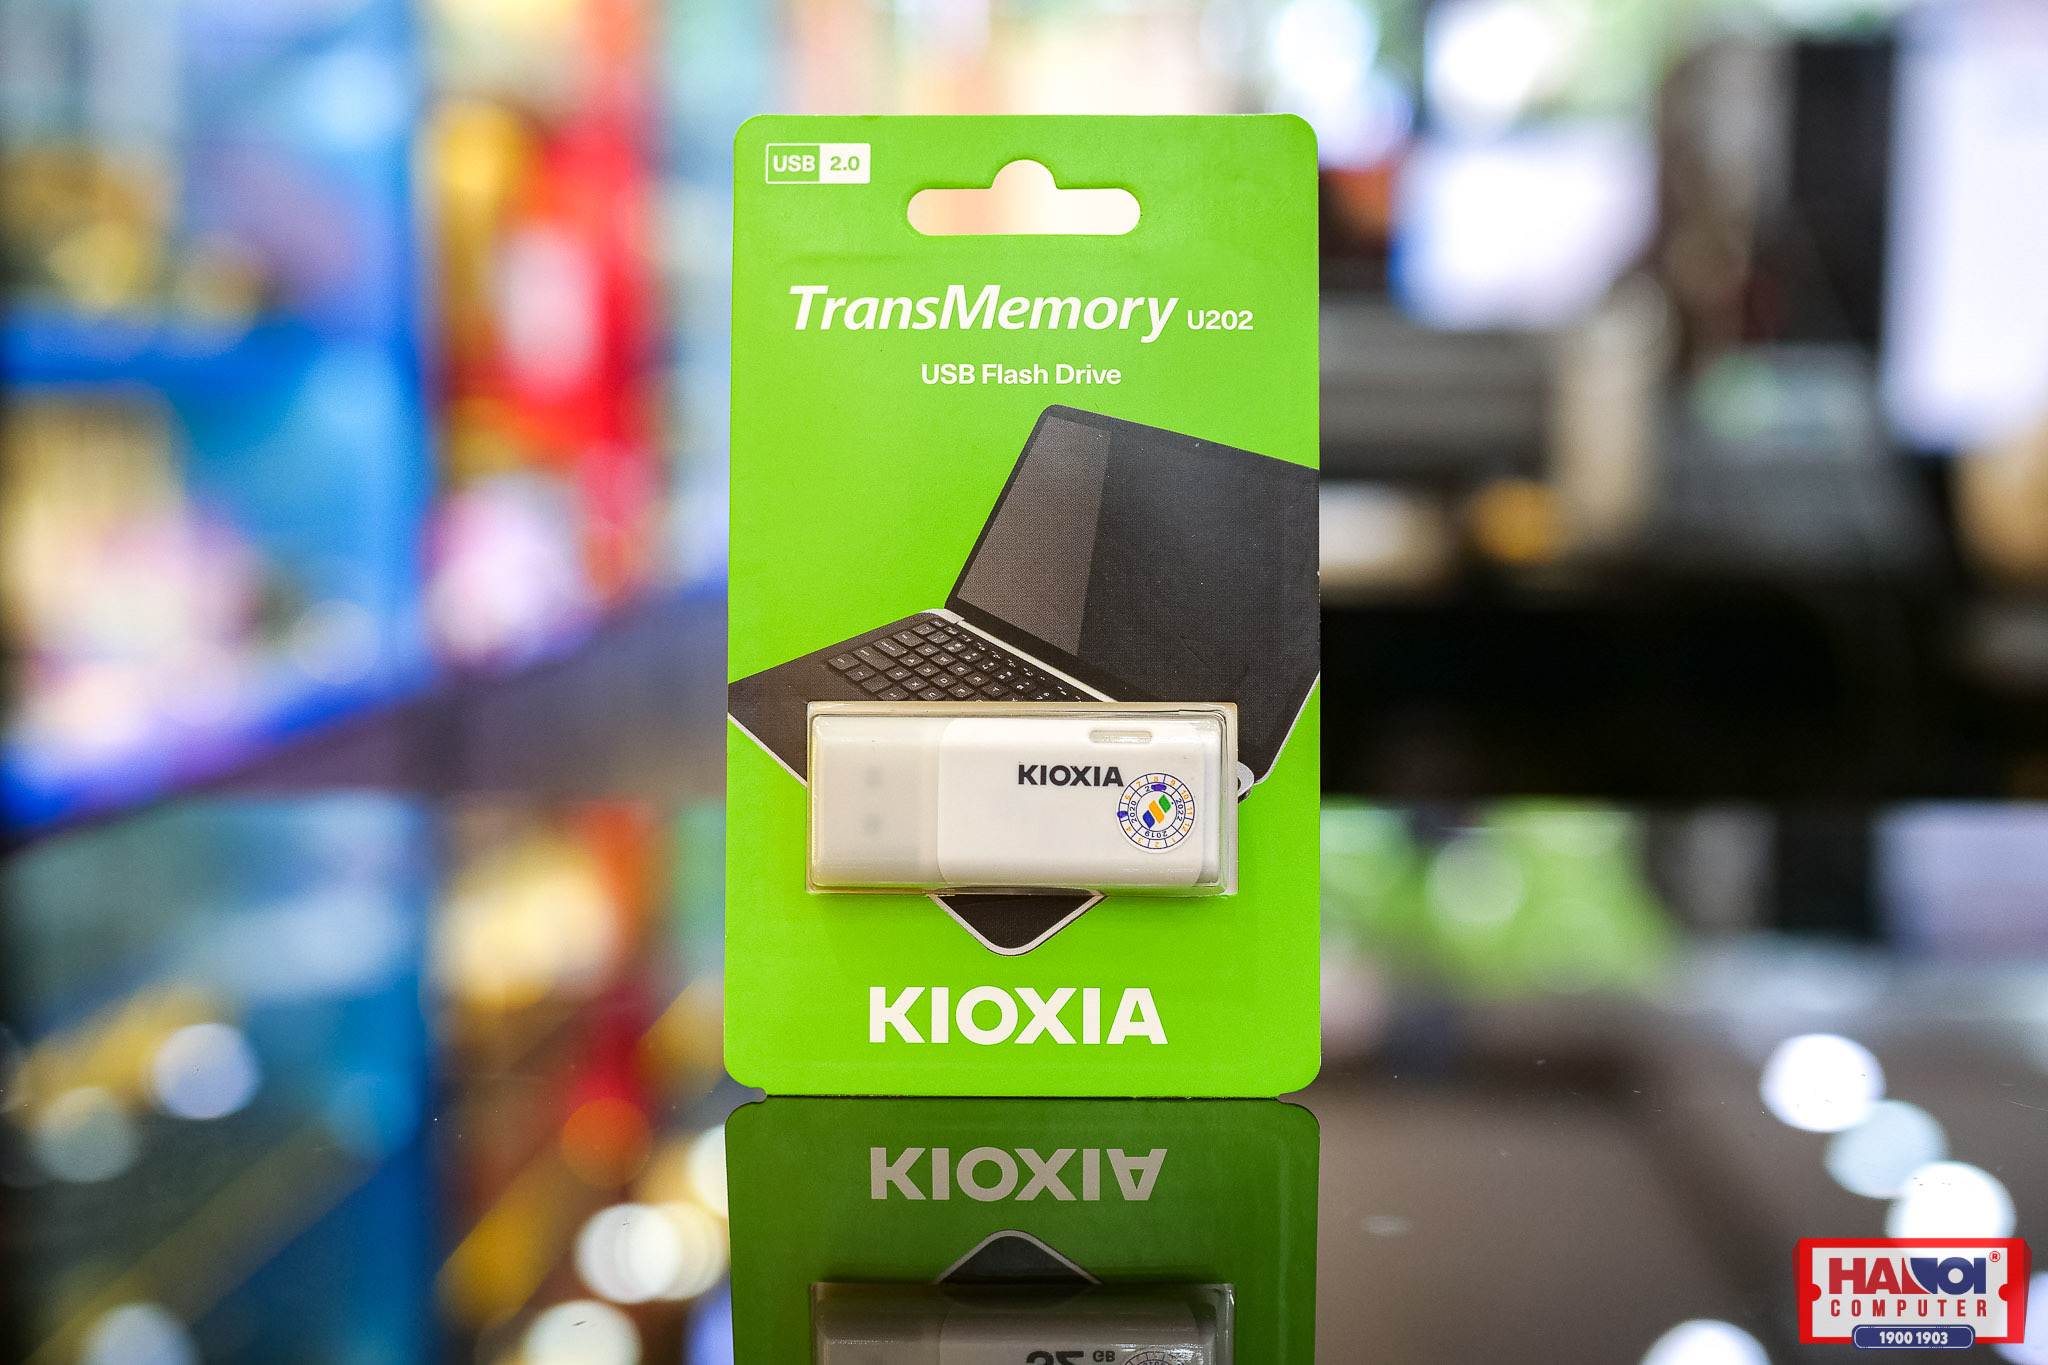 USB Kioxia 32GB 2.0 U202 White